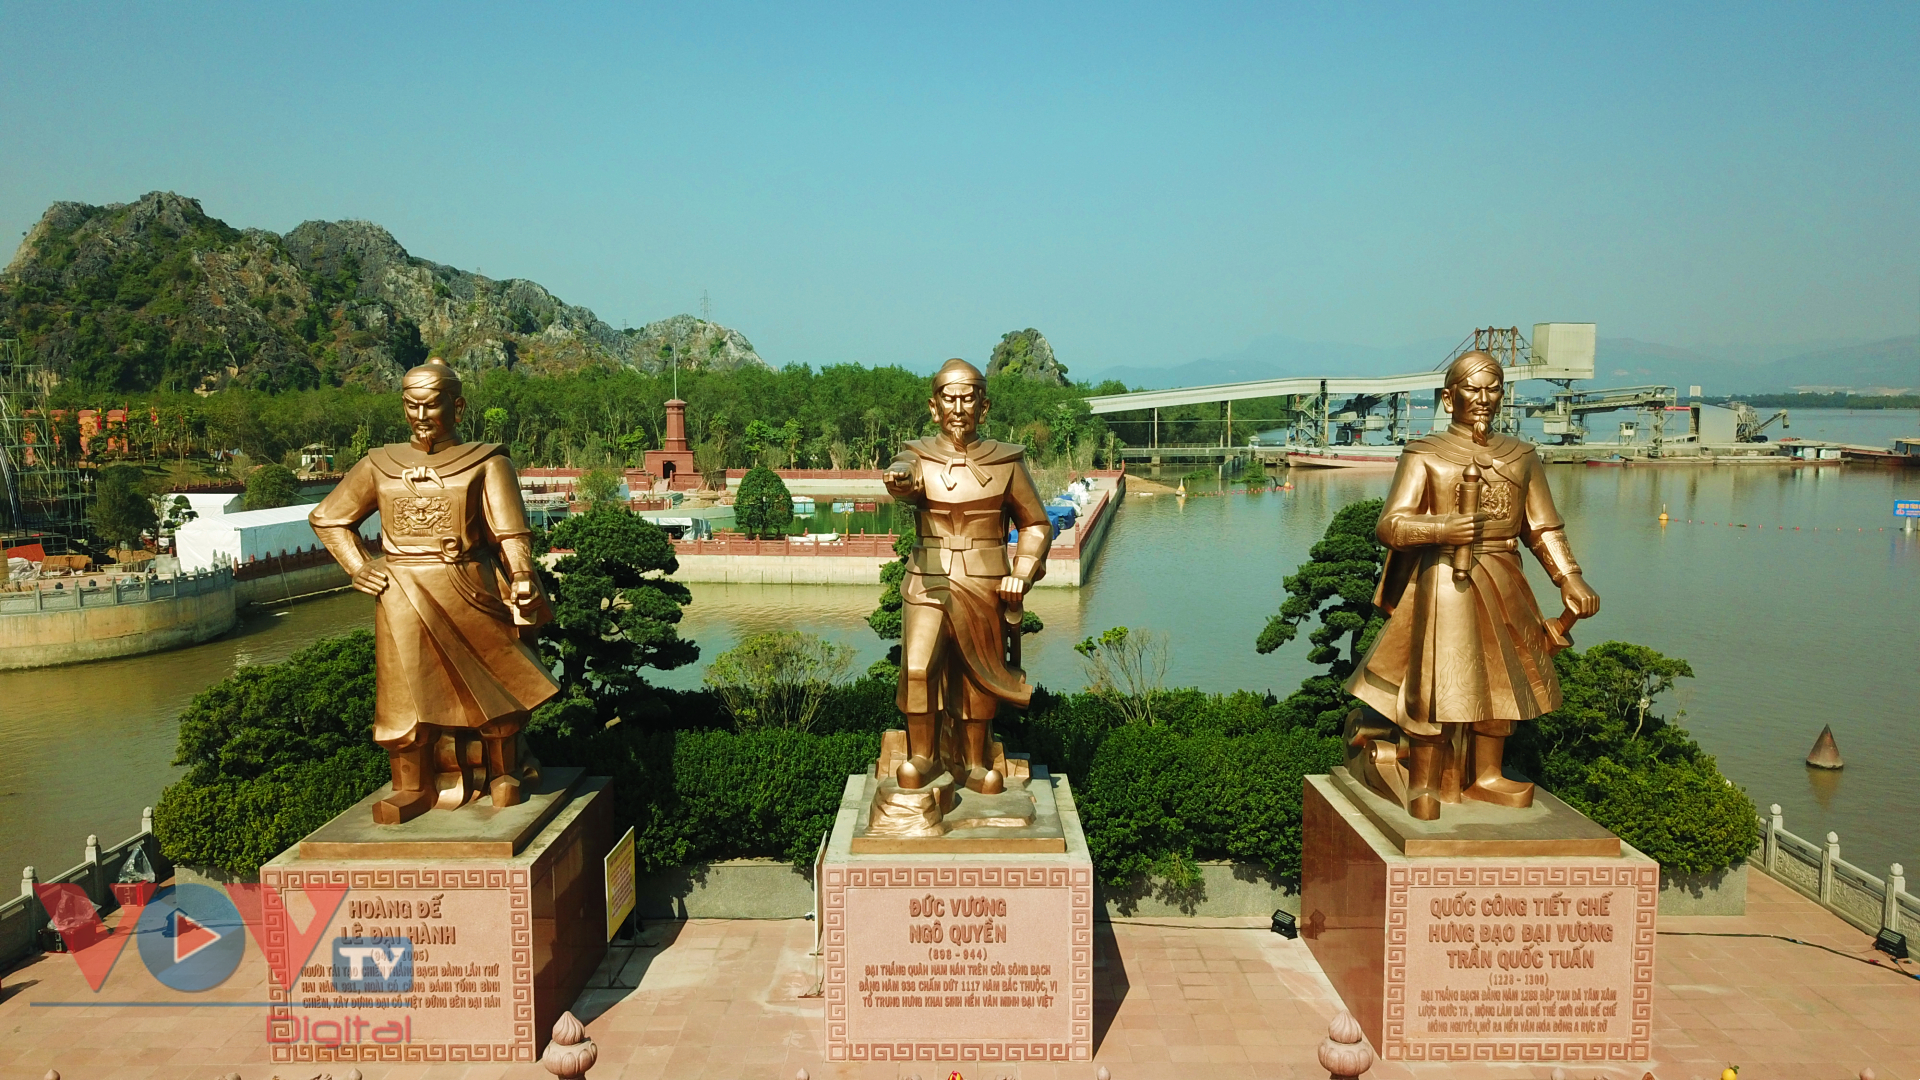 Di tích lịch sử Quốc gia Bạch Đằng Giang - Nơi hội tụ hồn thiêng sông núi - Ảnh 4.